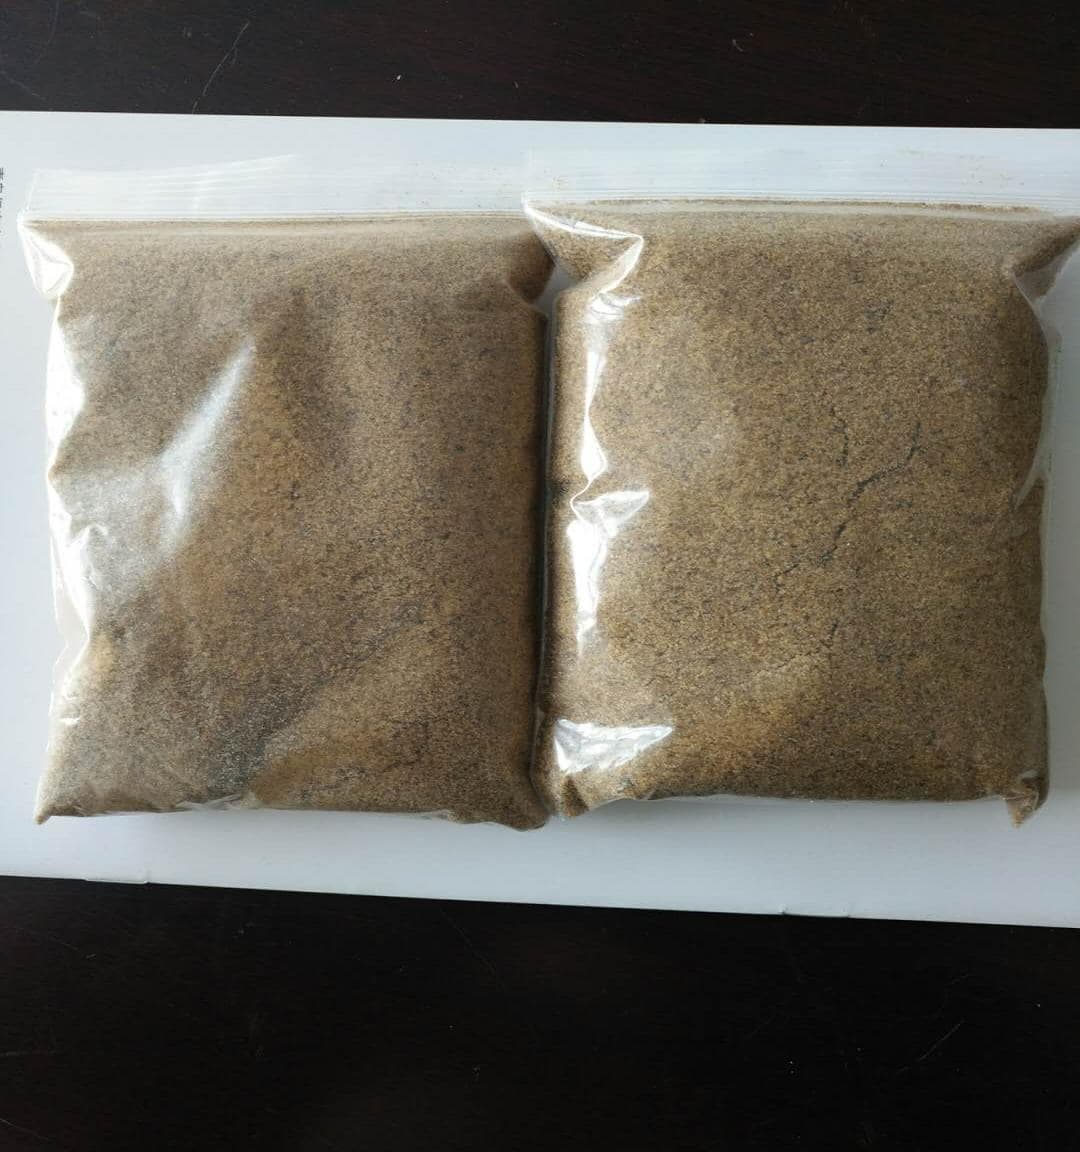 dried mealworm powder